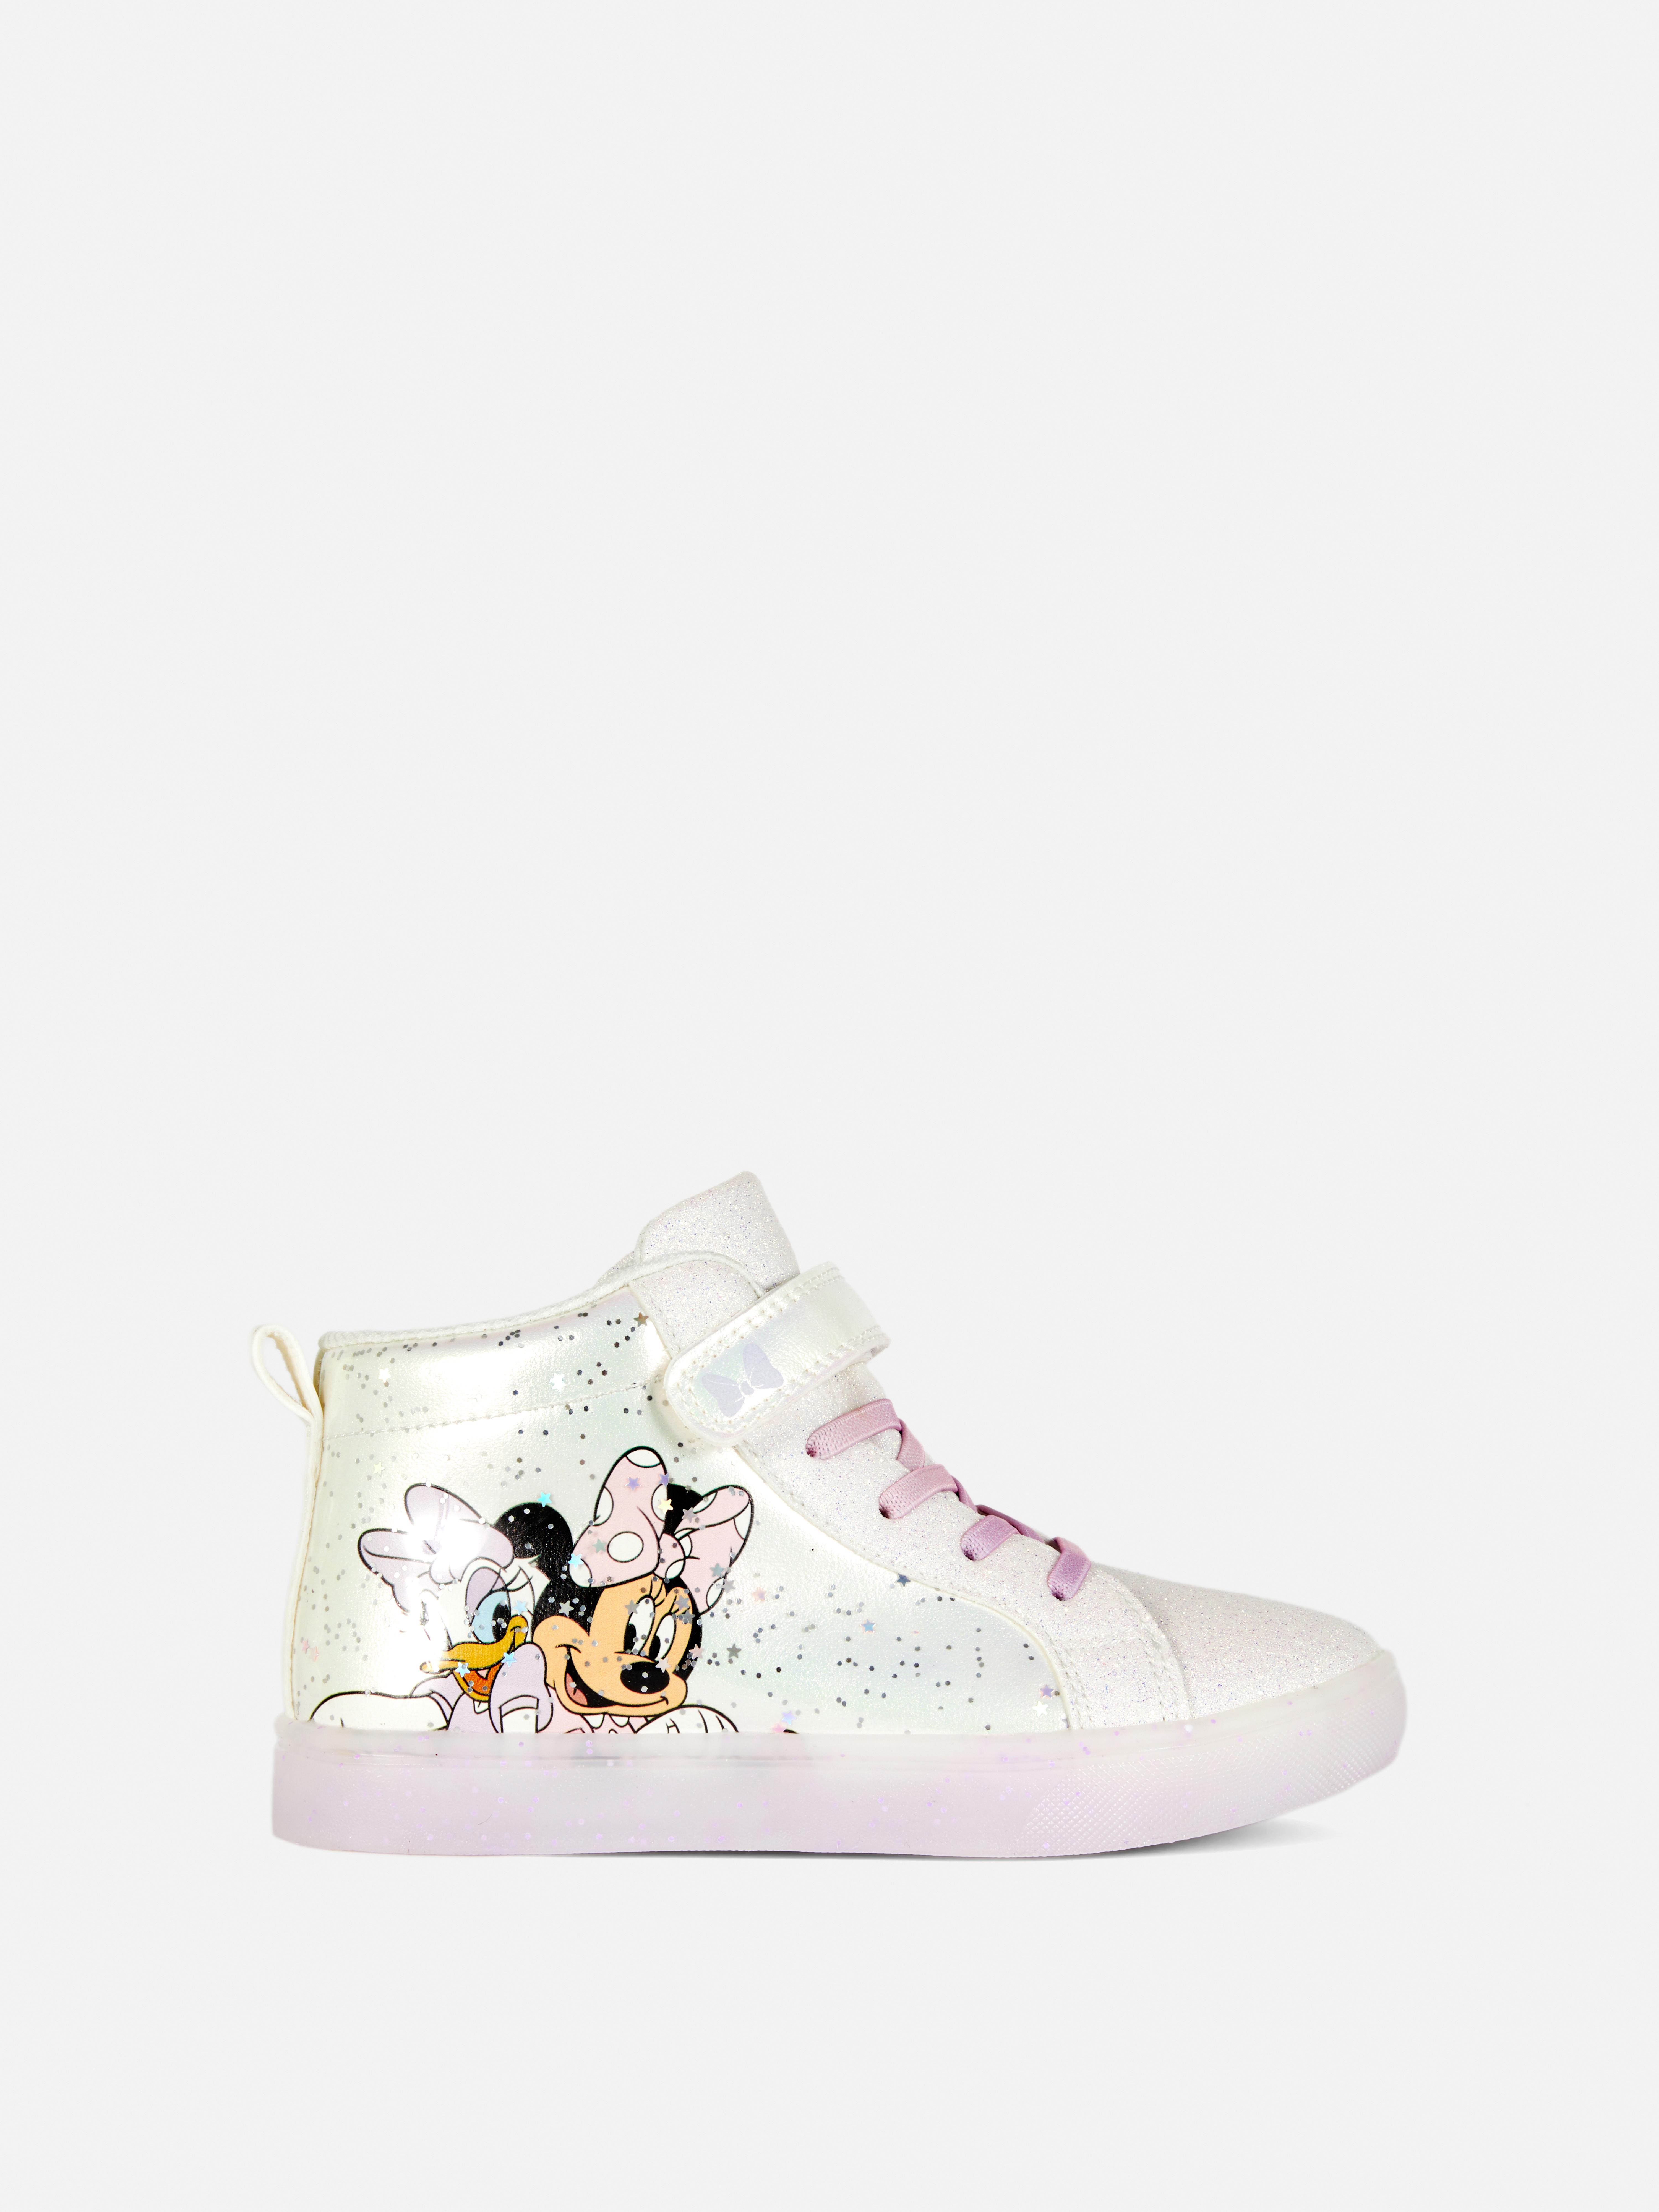 Baskets lumineuses Disney Minnie Mouse et Daisy Duck